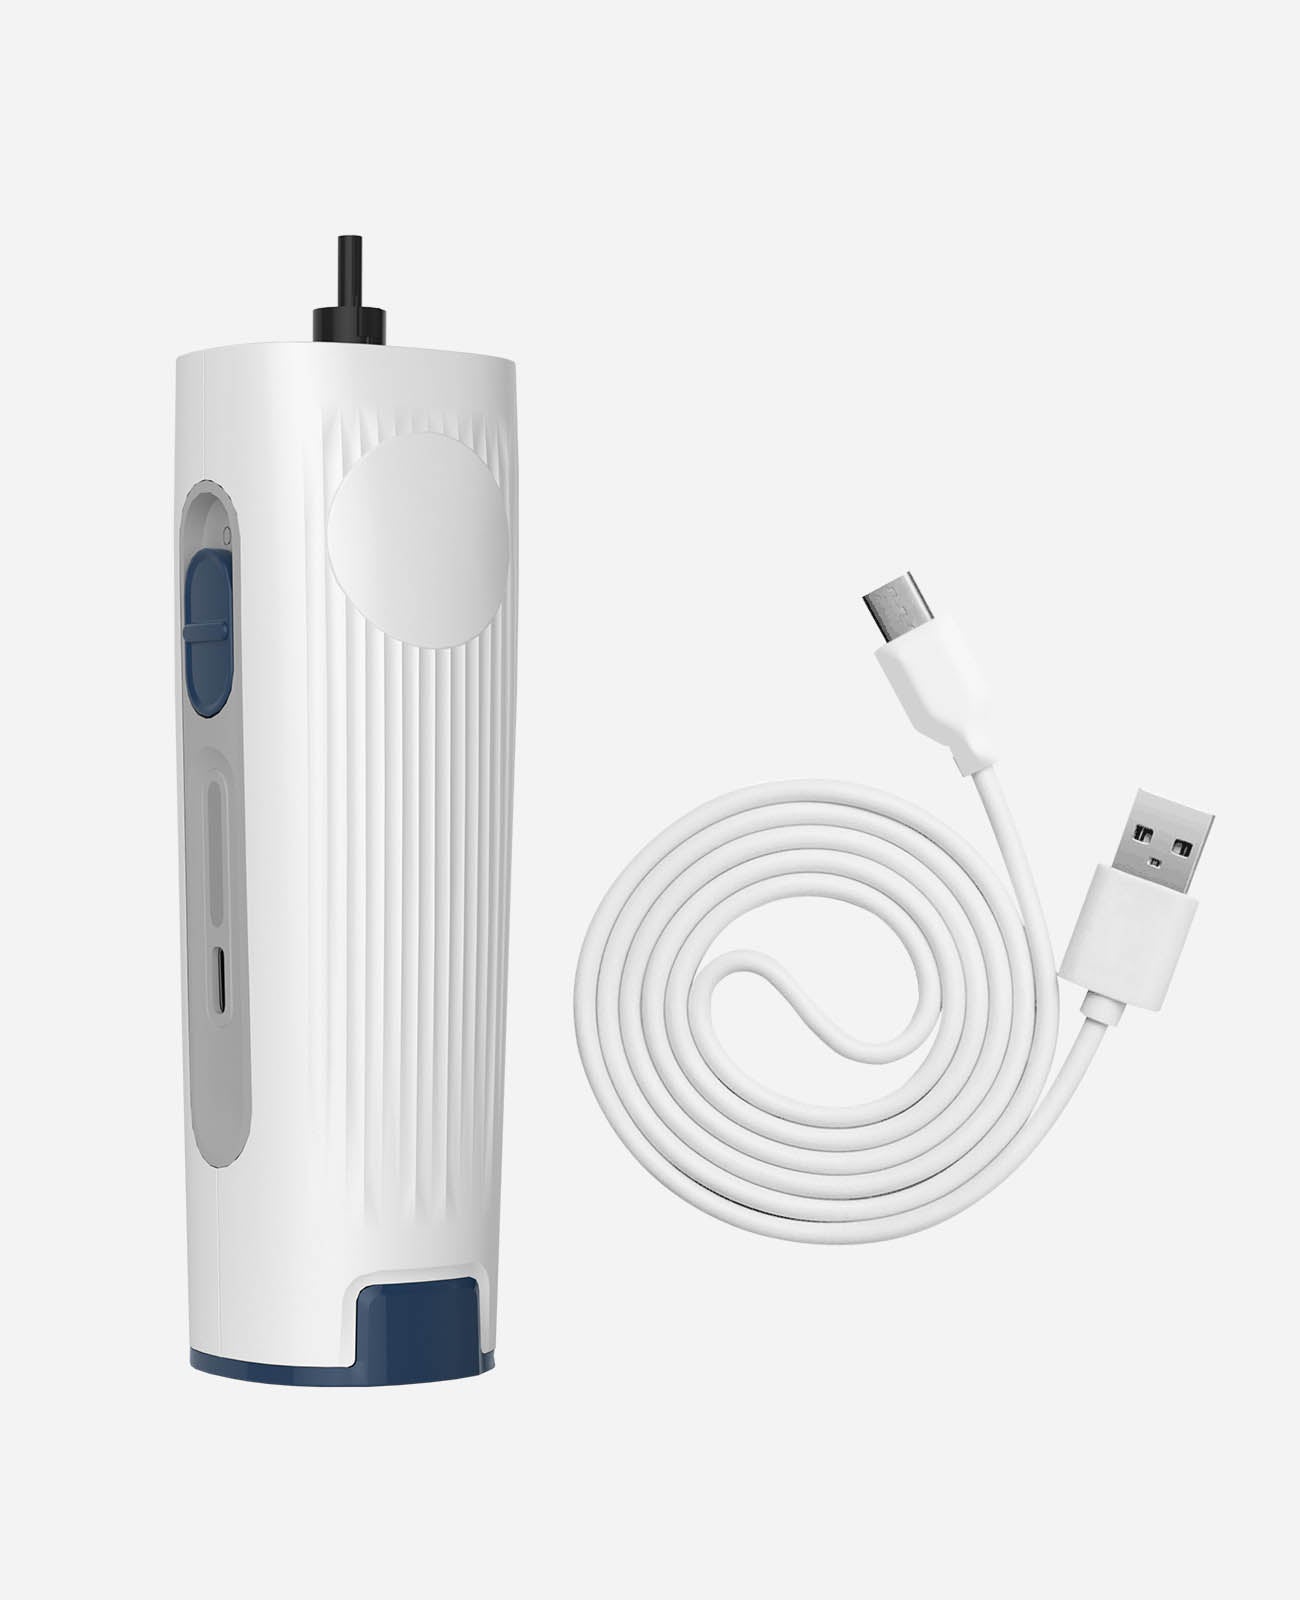 
                  
                    Oneisall 교체용 메인 클리퍼 + 애완 동물 미용 진공용 USB 충전기
                  
                